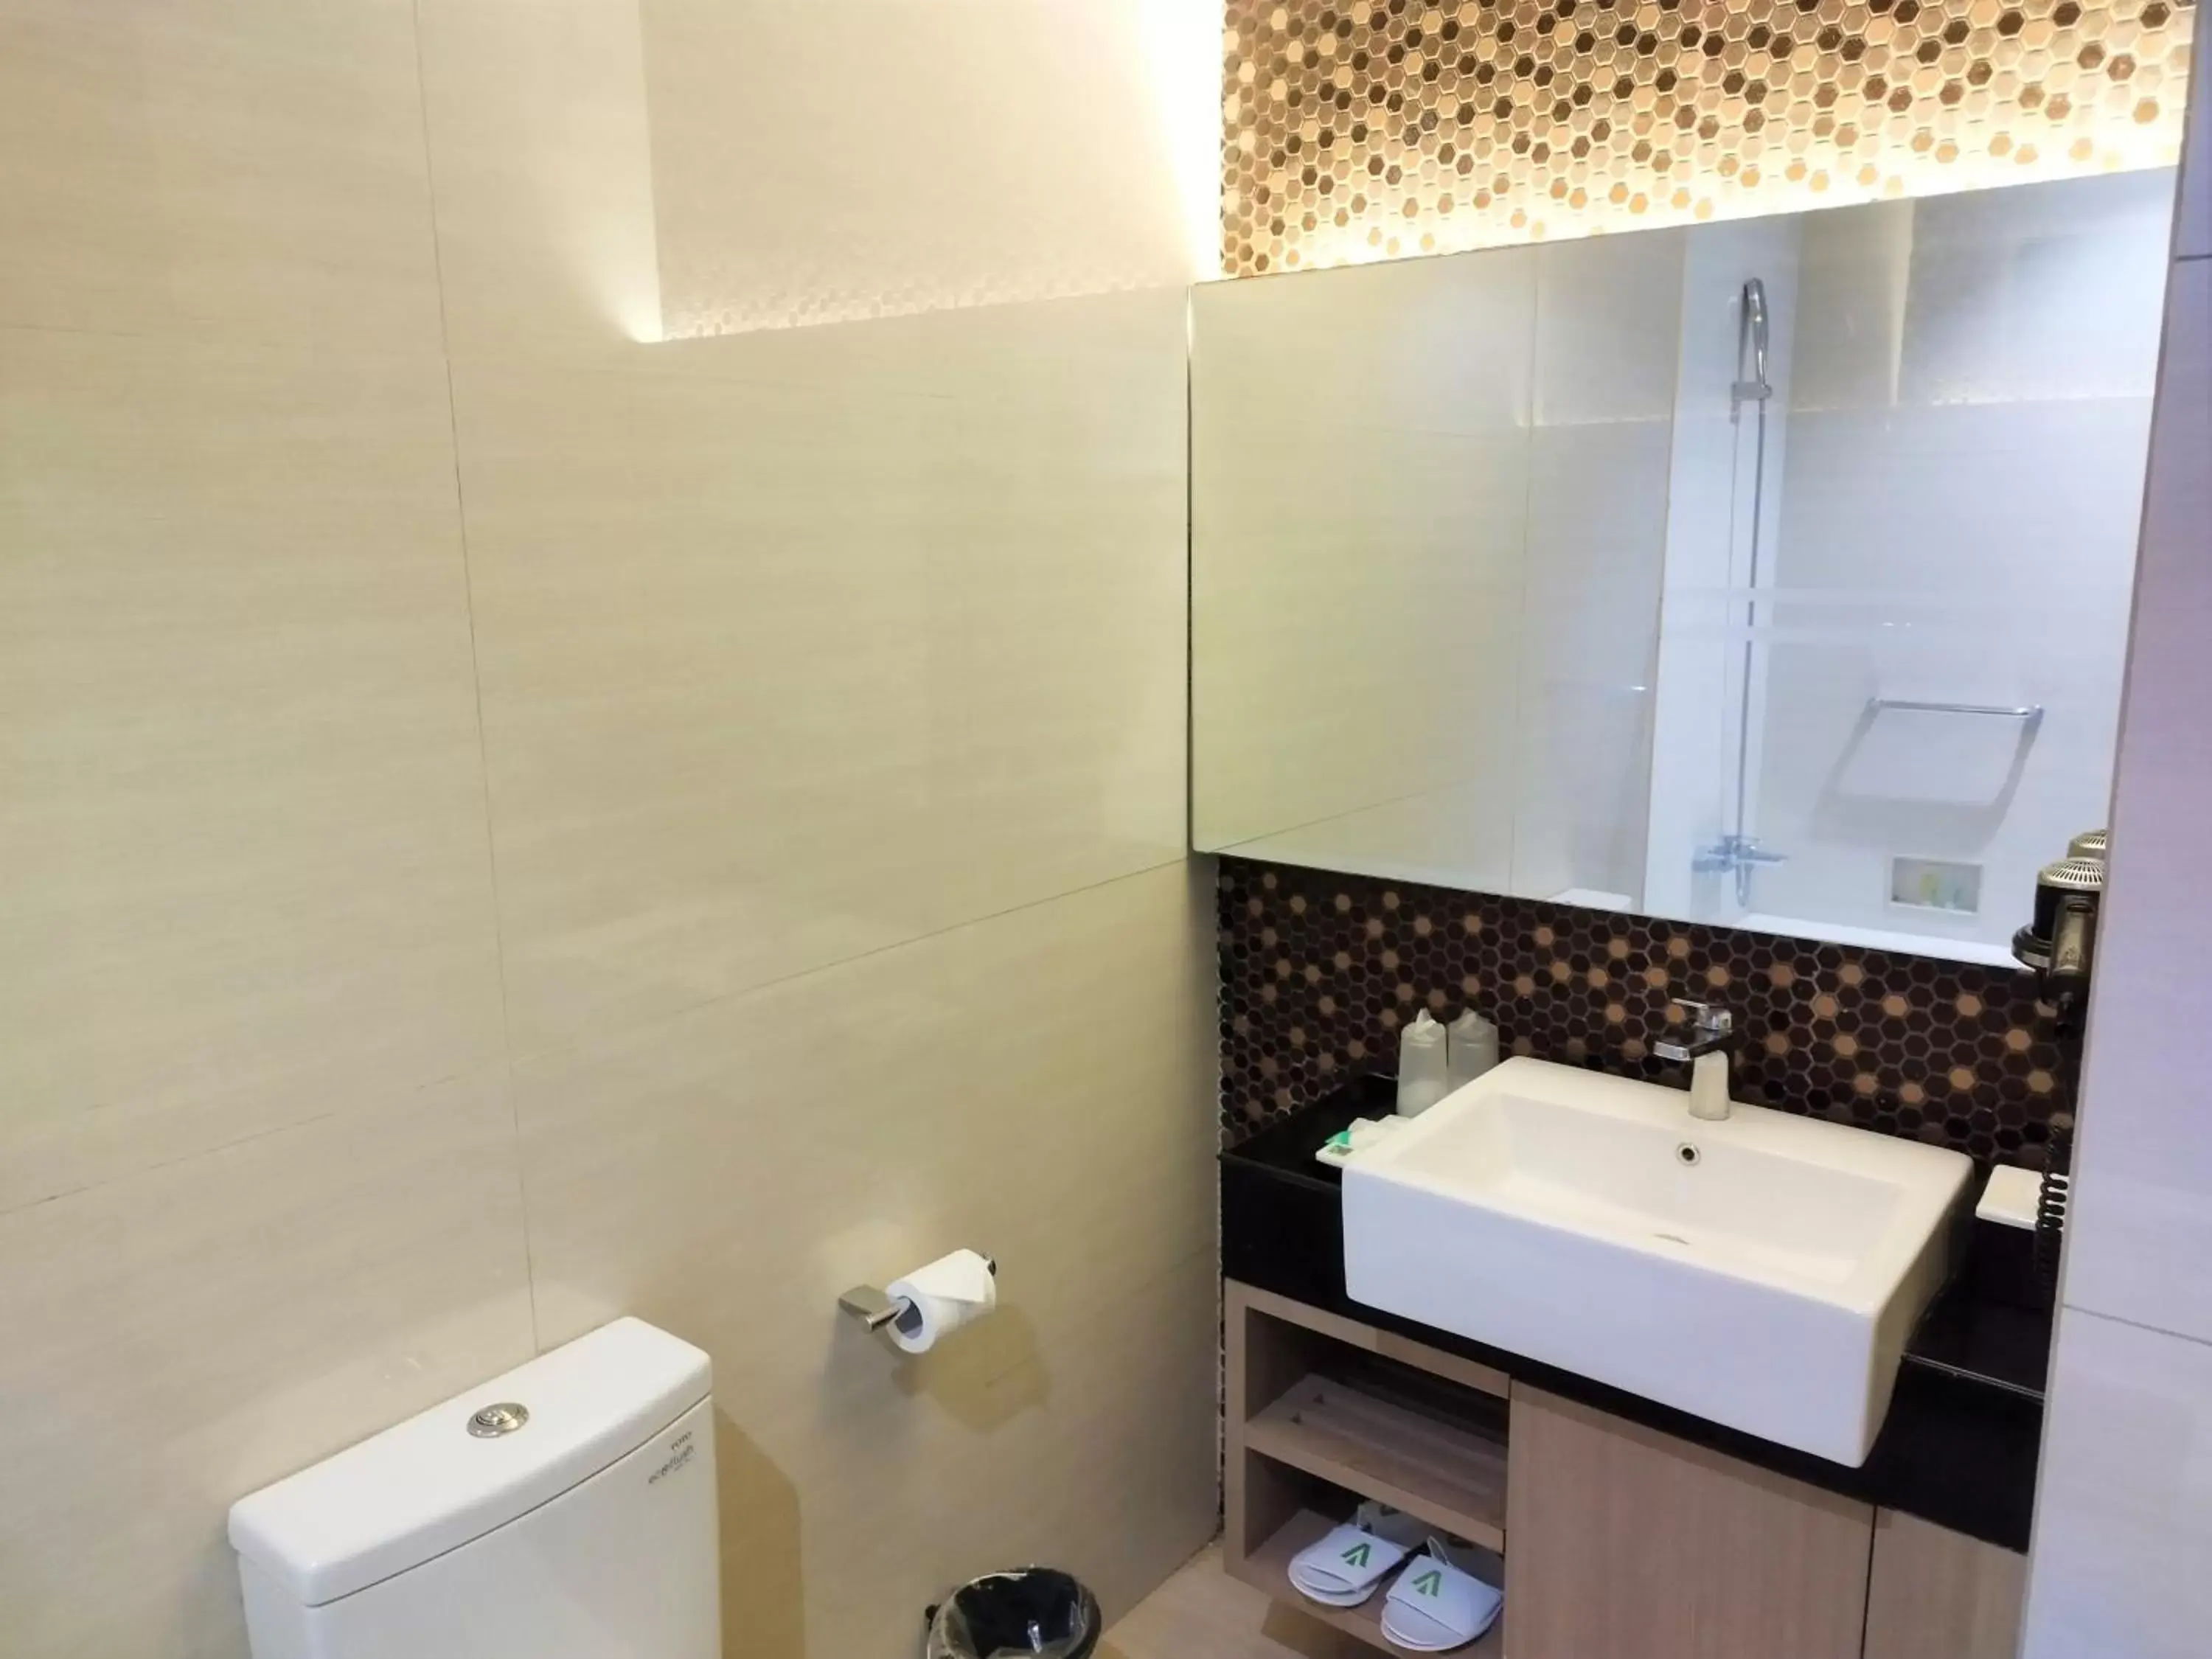 Bathroom in AONE Hotel